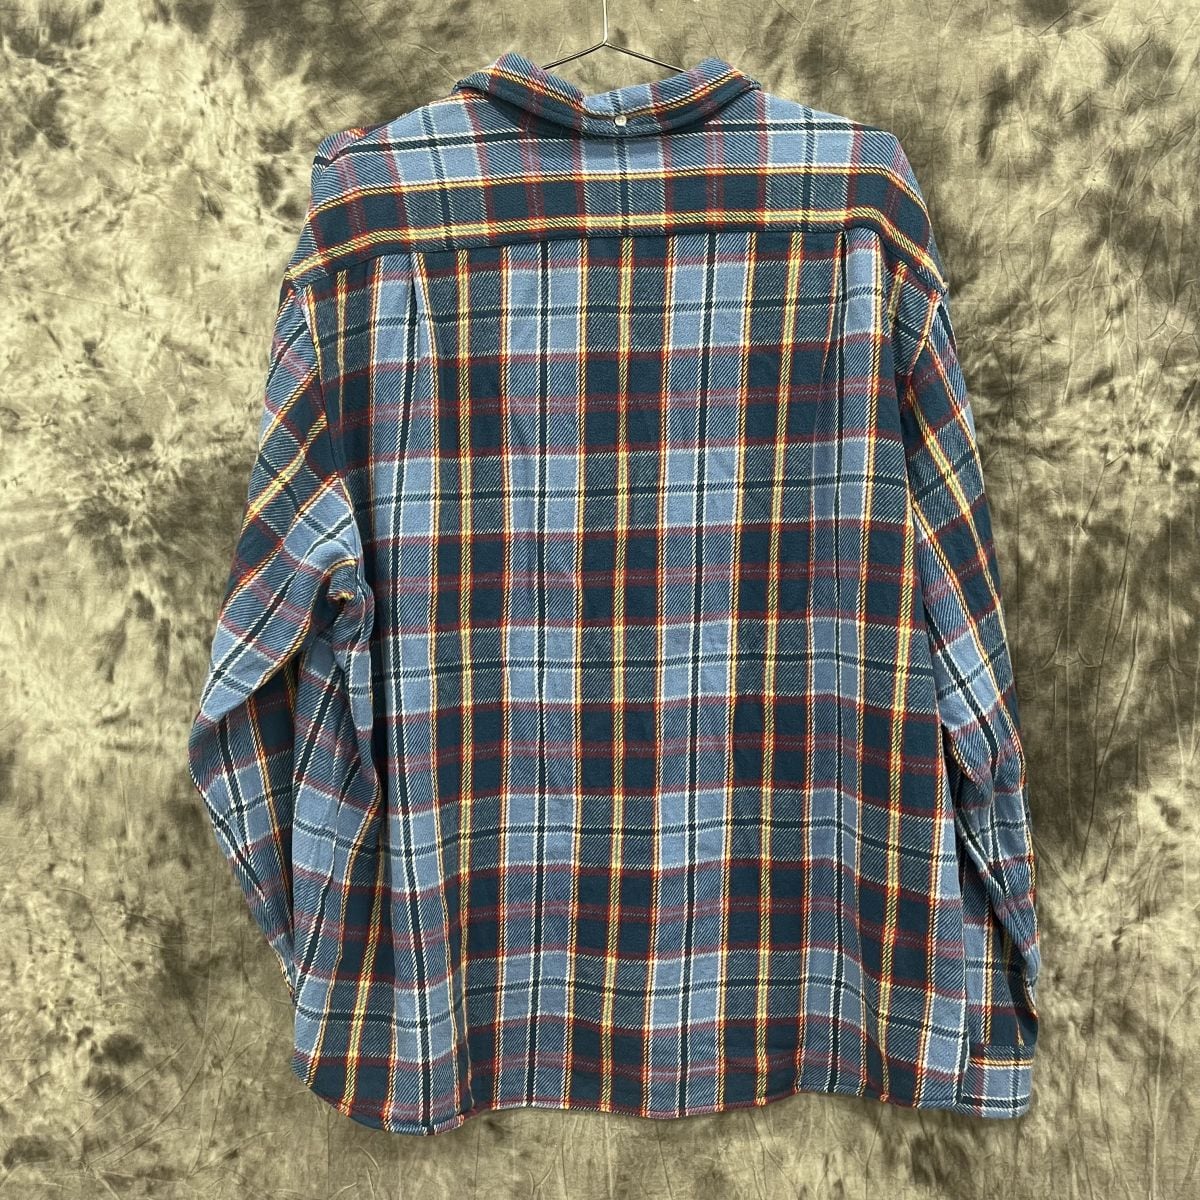 Supreme 21ss Plaid Flannel Shirt Mサイズ